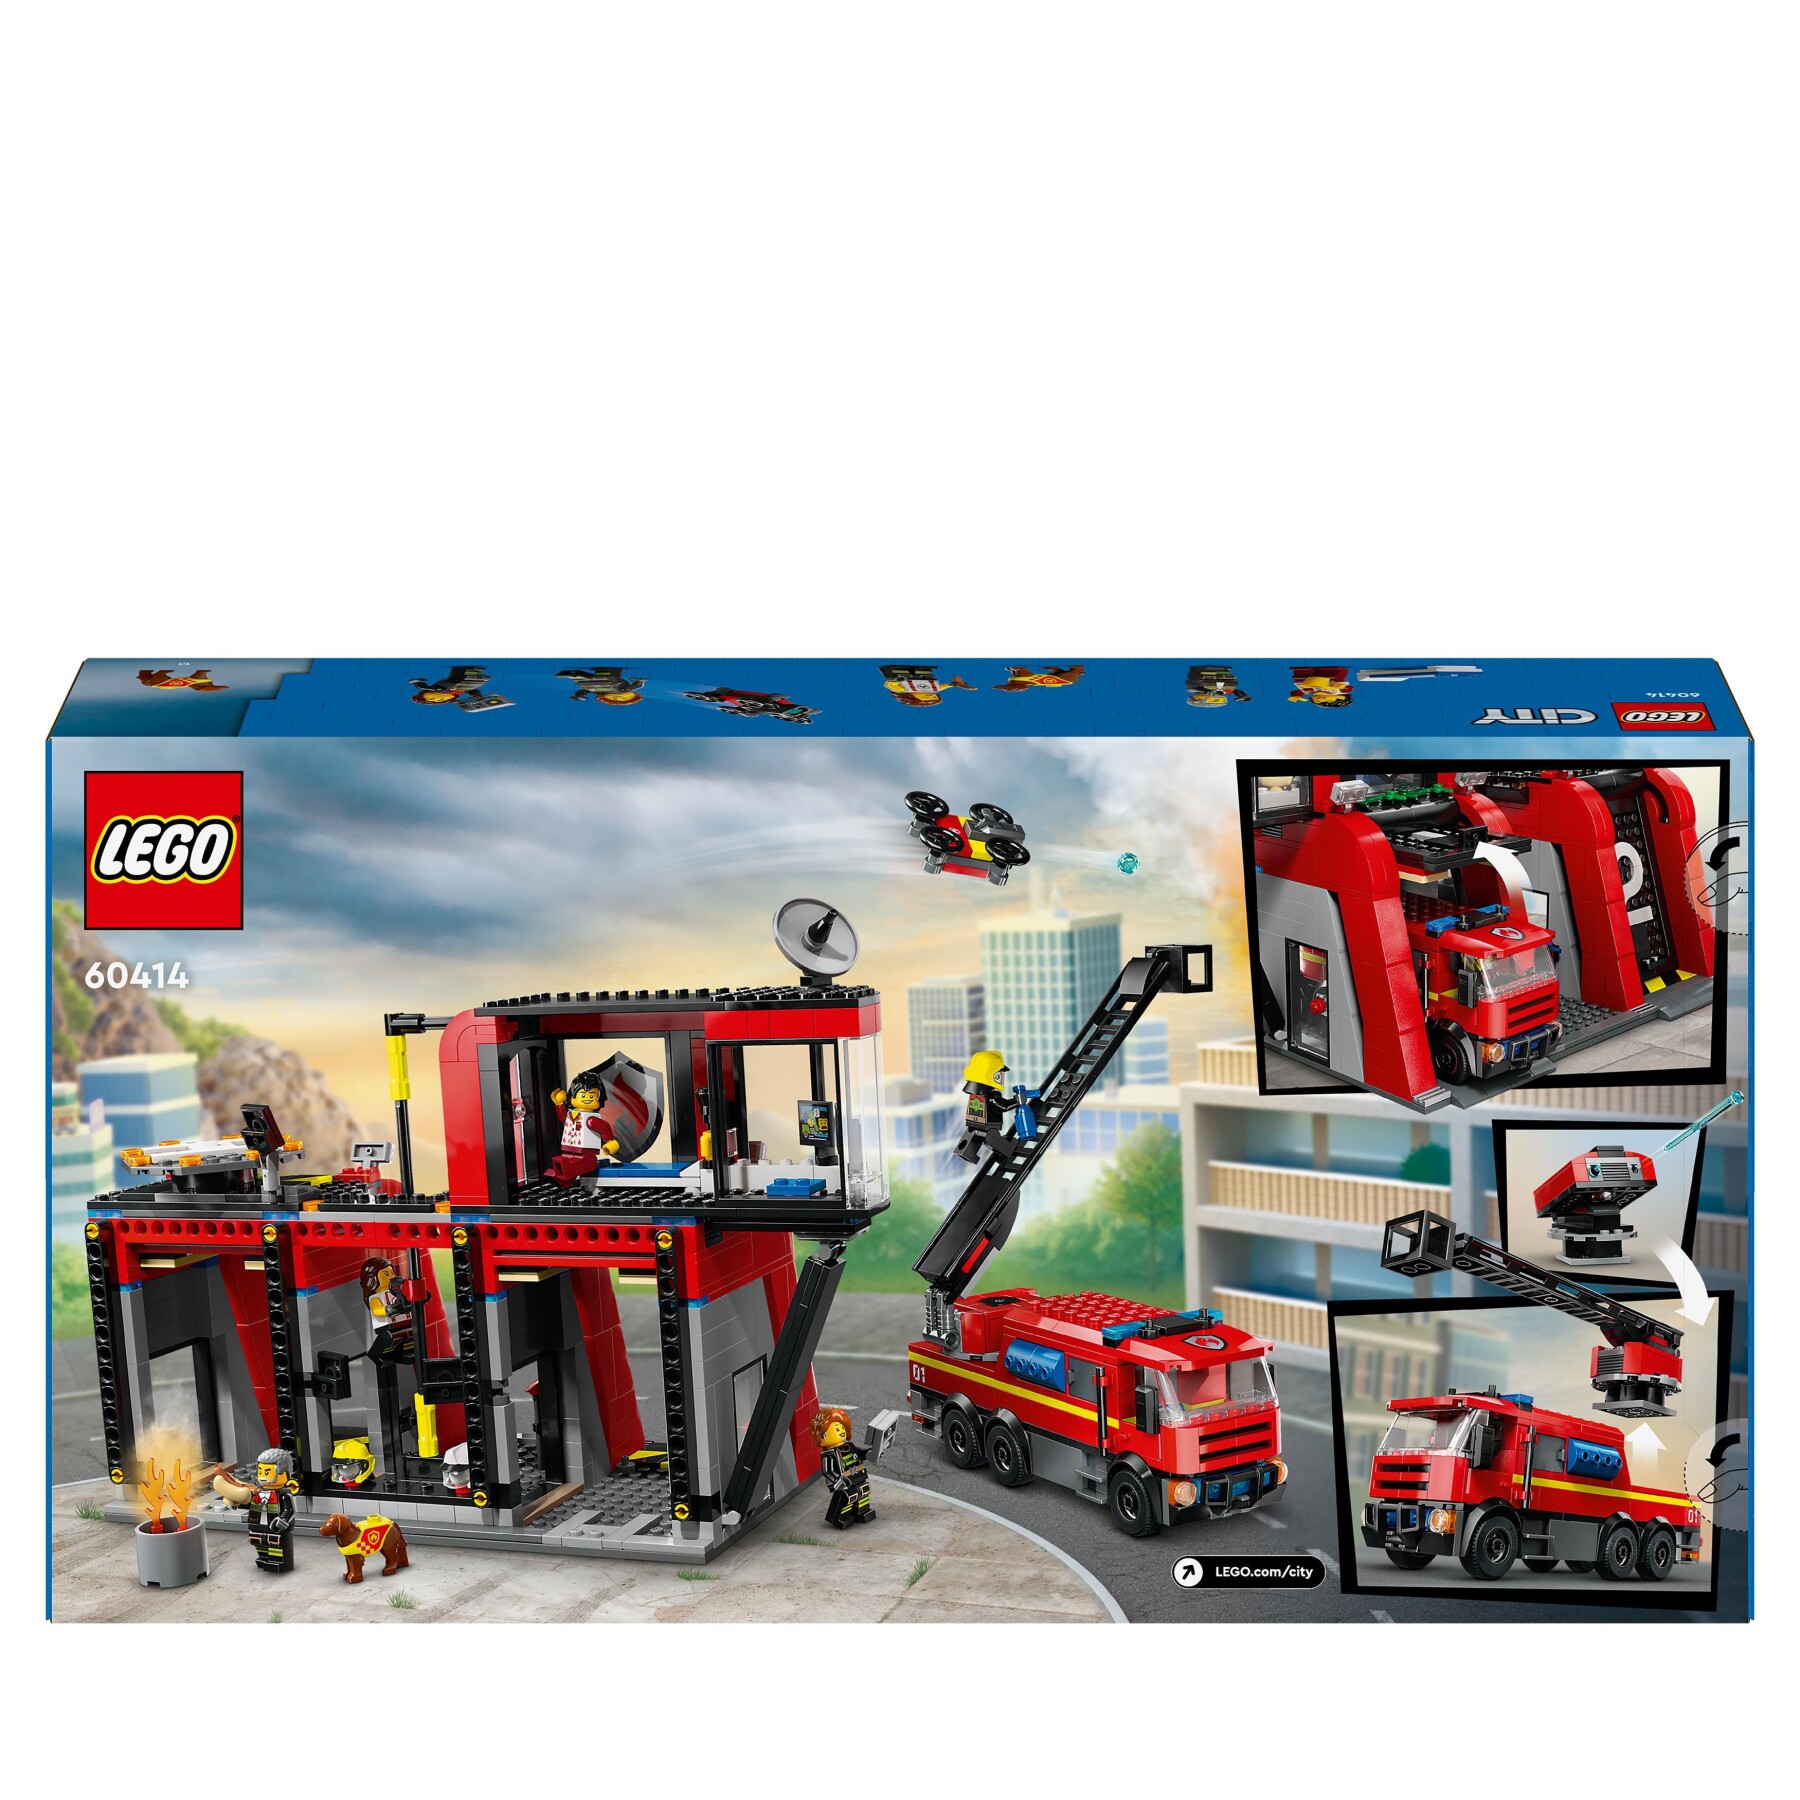 Lego city 60414 caserma dei pompieri e autopompa con camion giocattolo, 6 minifigure, cane e accessori, gioco per bambini 6+ - LEGO CITY